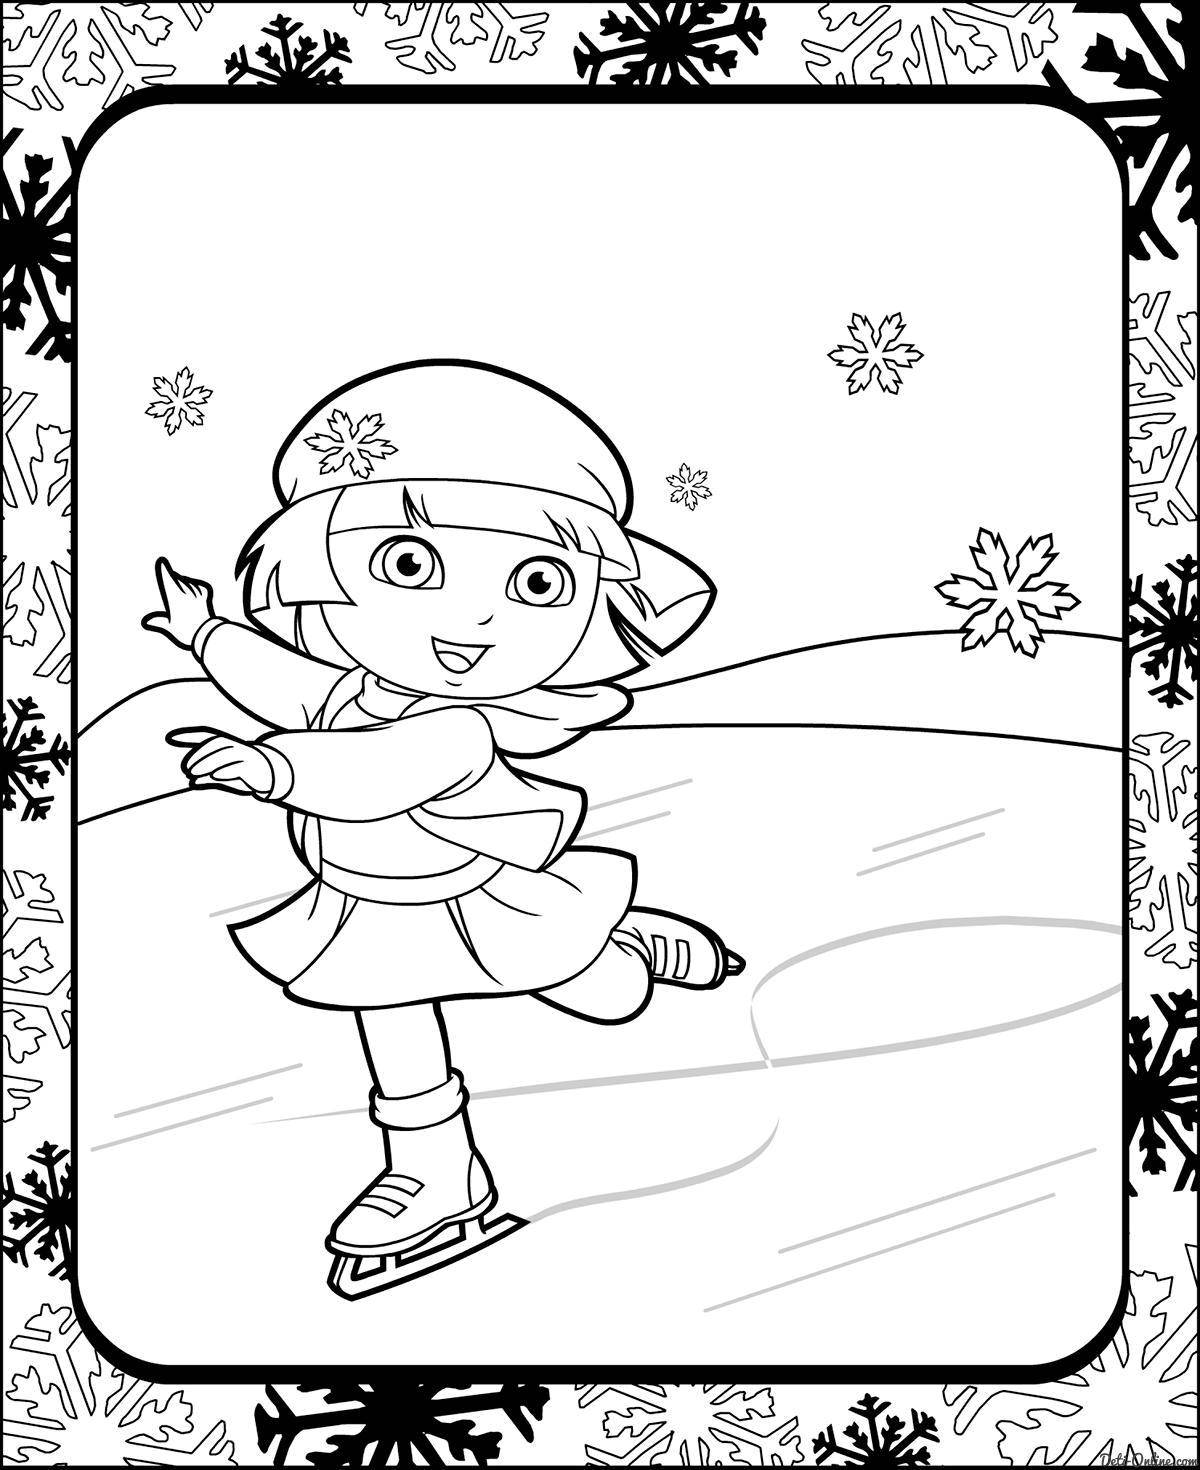 Coloring Dasha skating. Category Cartoon character. Tags:  Cartoon character, Dora the Explorer, Dora, Boots.